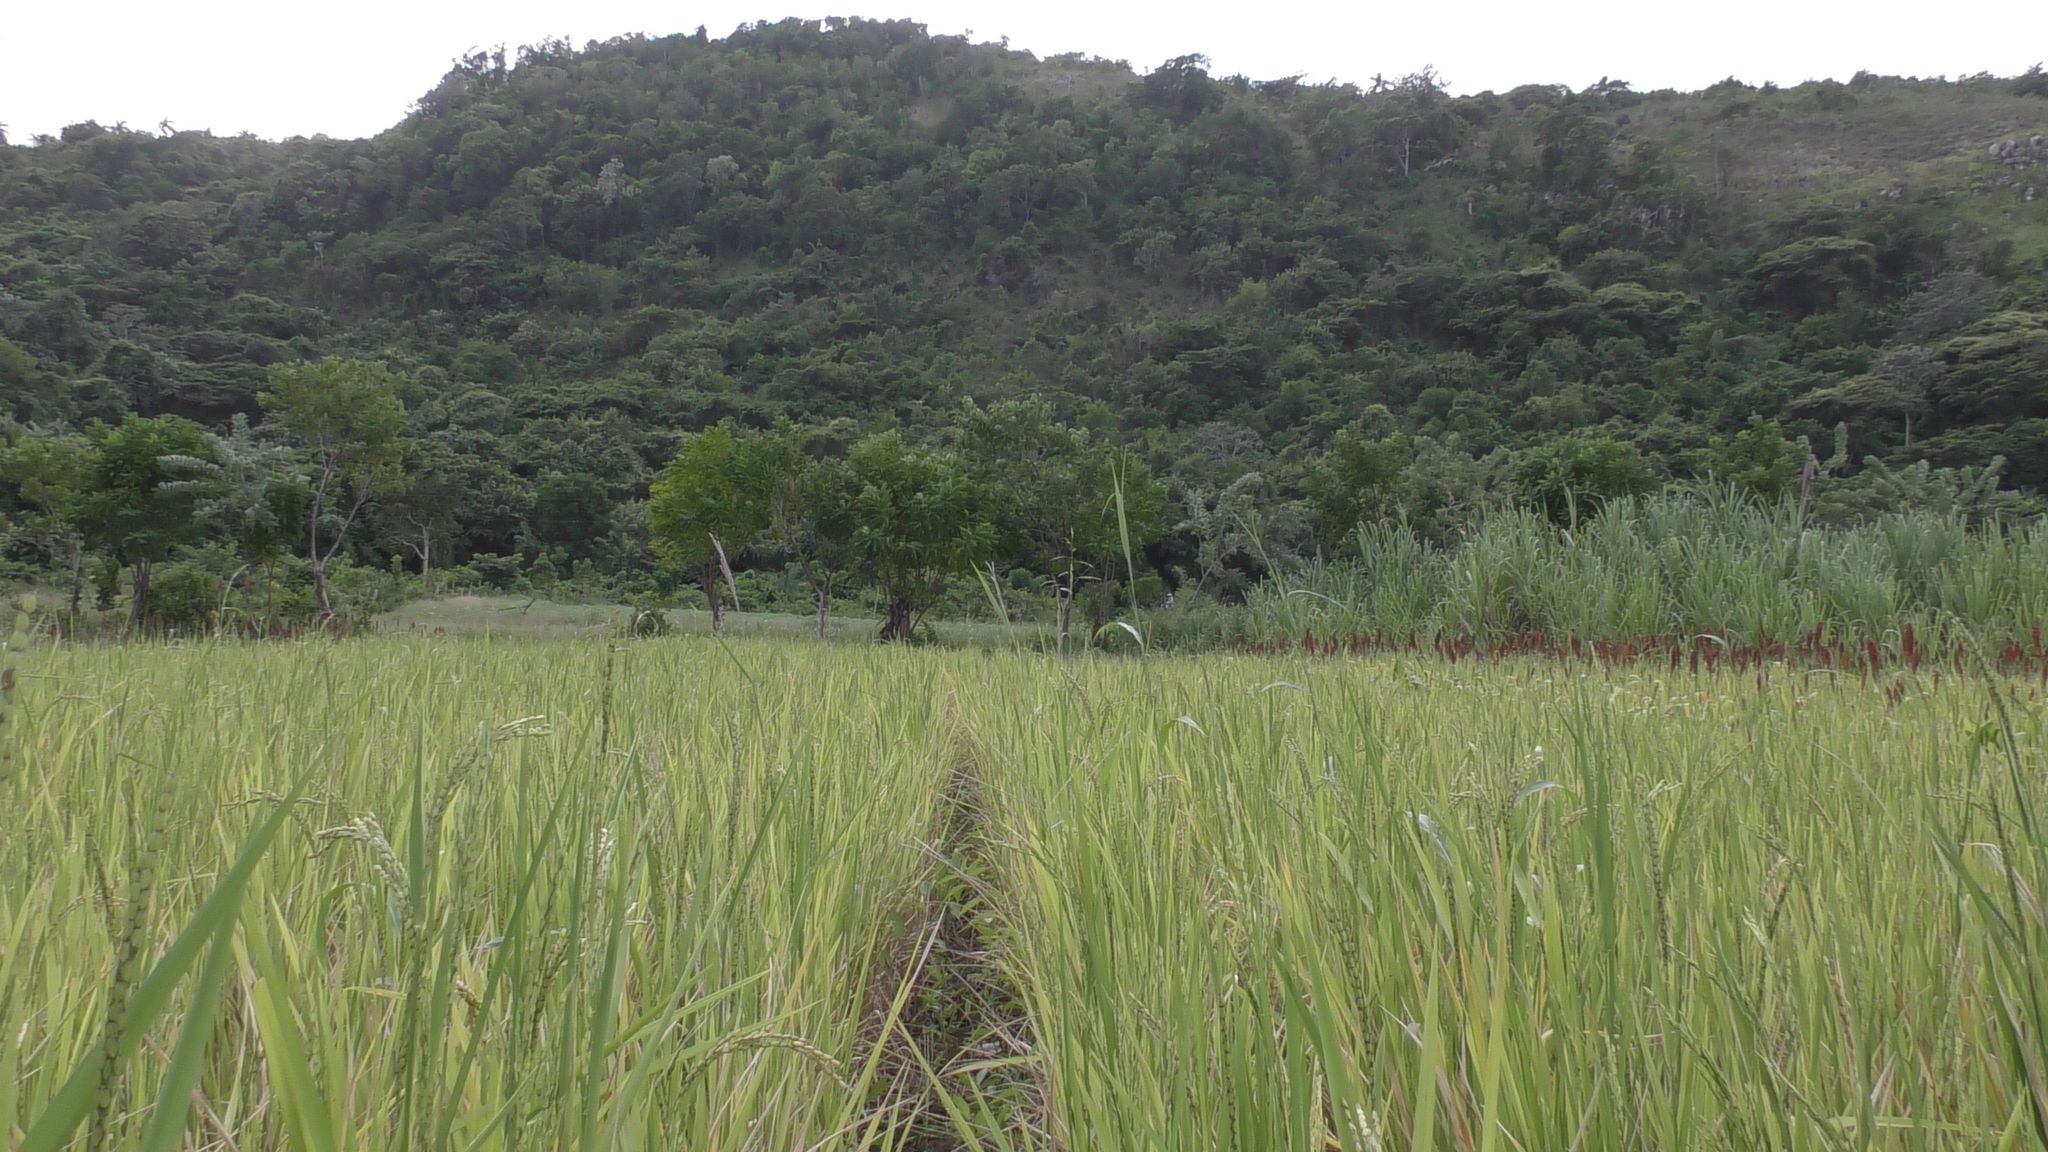  cultivo de arroz en agroecosistemas de montañas finca escuela los hondones chambas ciego de avila 7